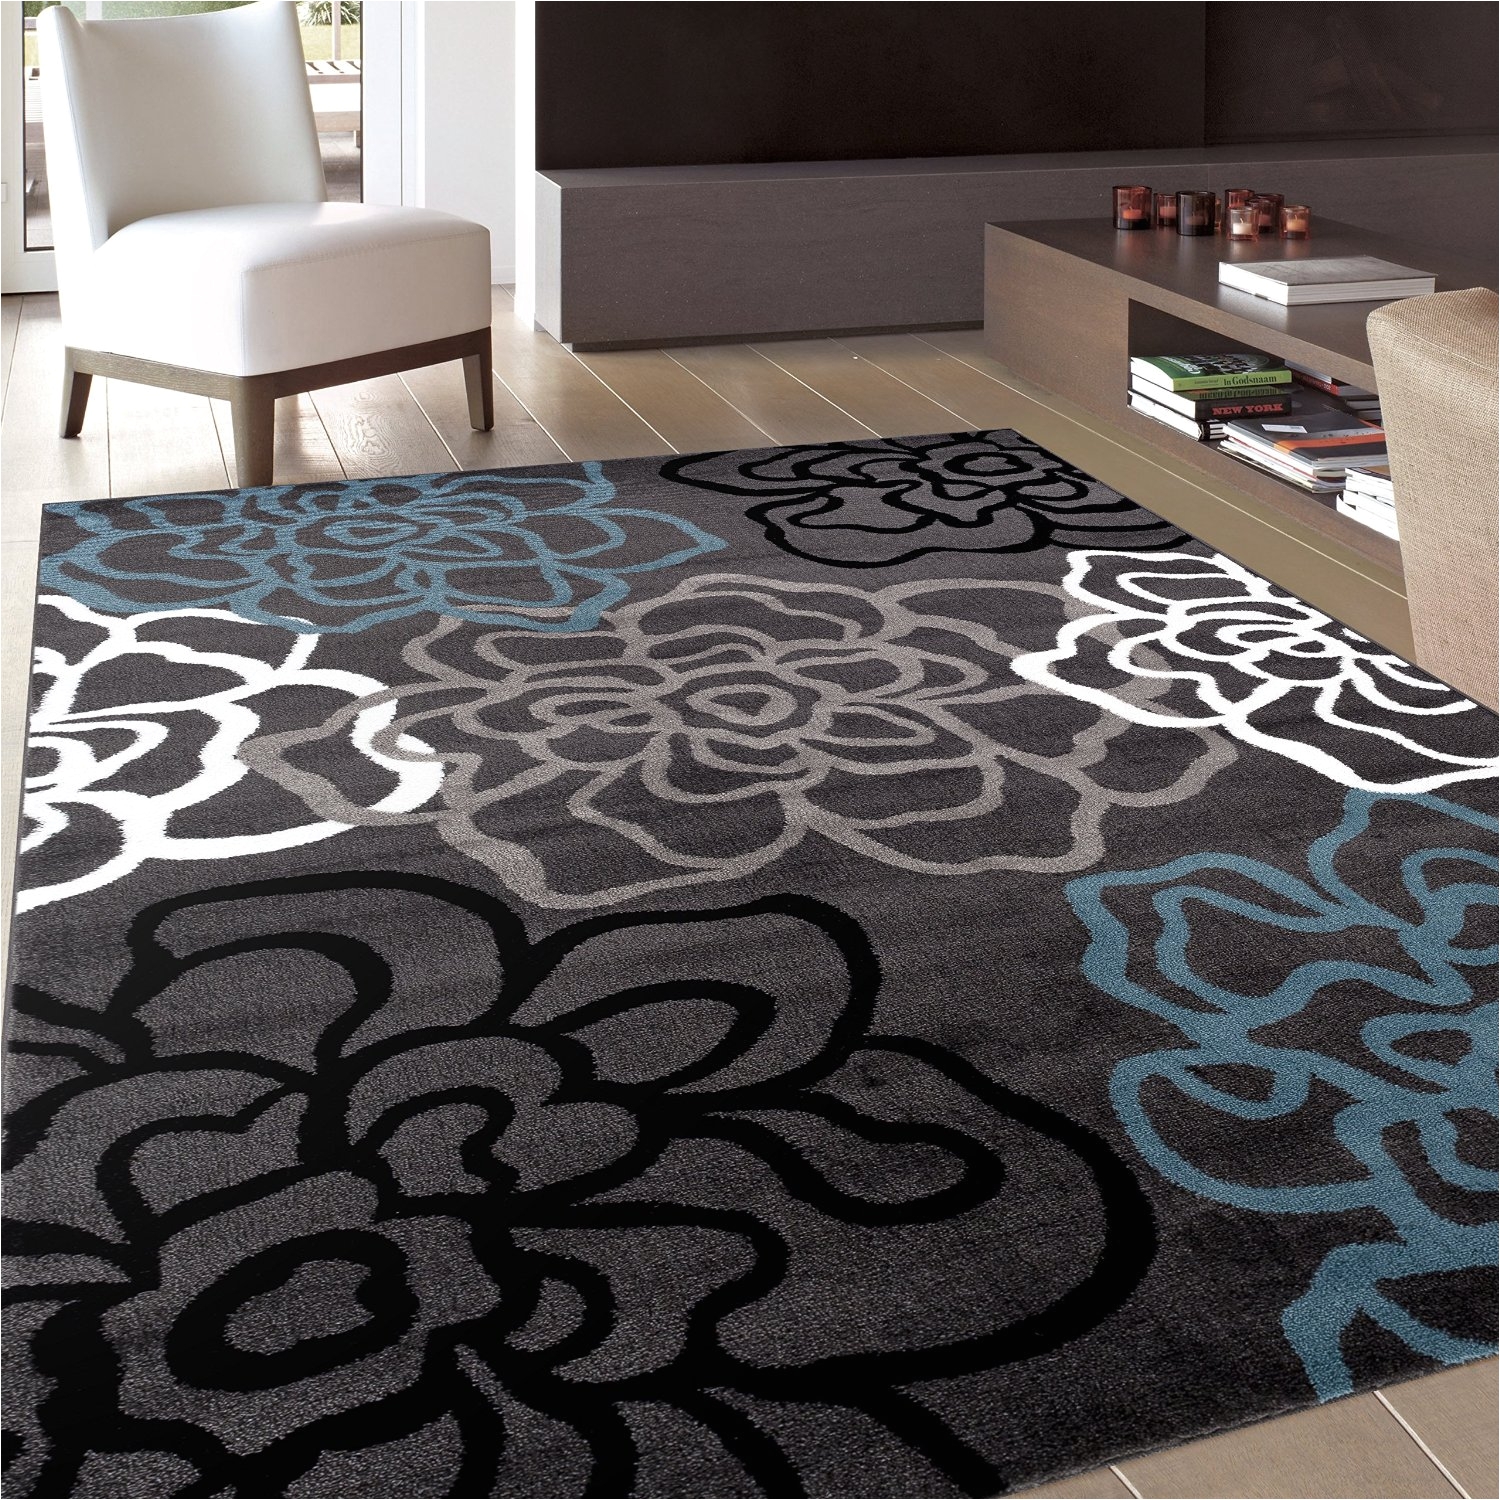 3x5 area rugs fresh jcpenney bath rugs burgundy bathroom rugs